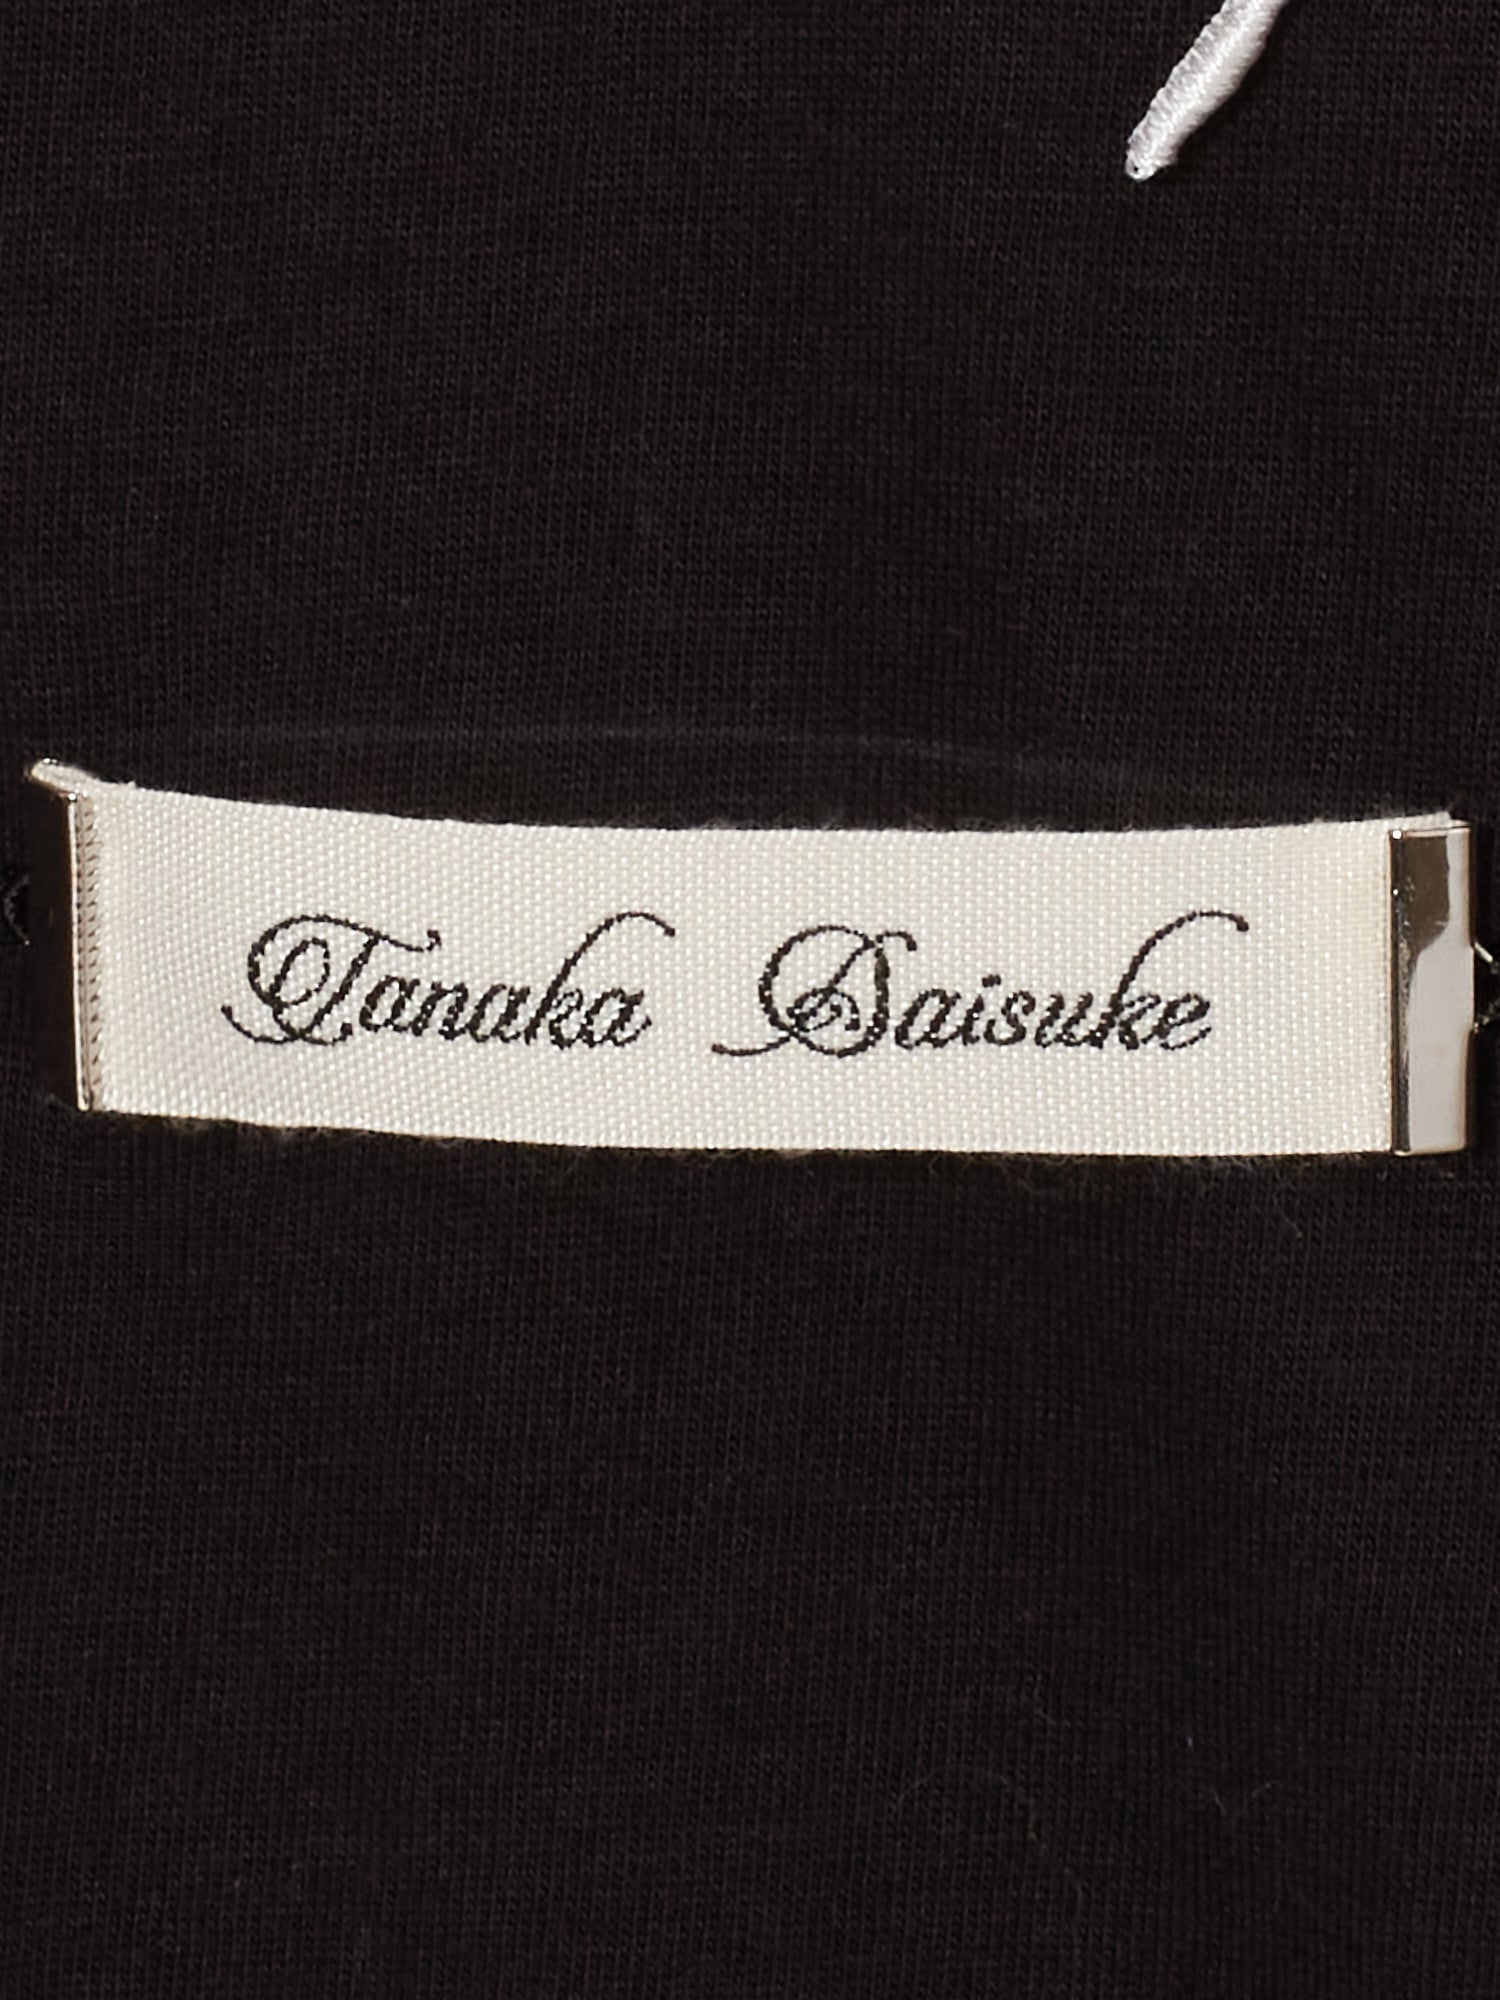 tanaka daisuke AKKIGAI Black T-shir